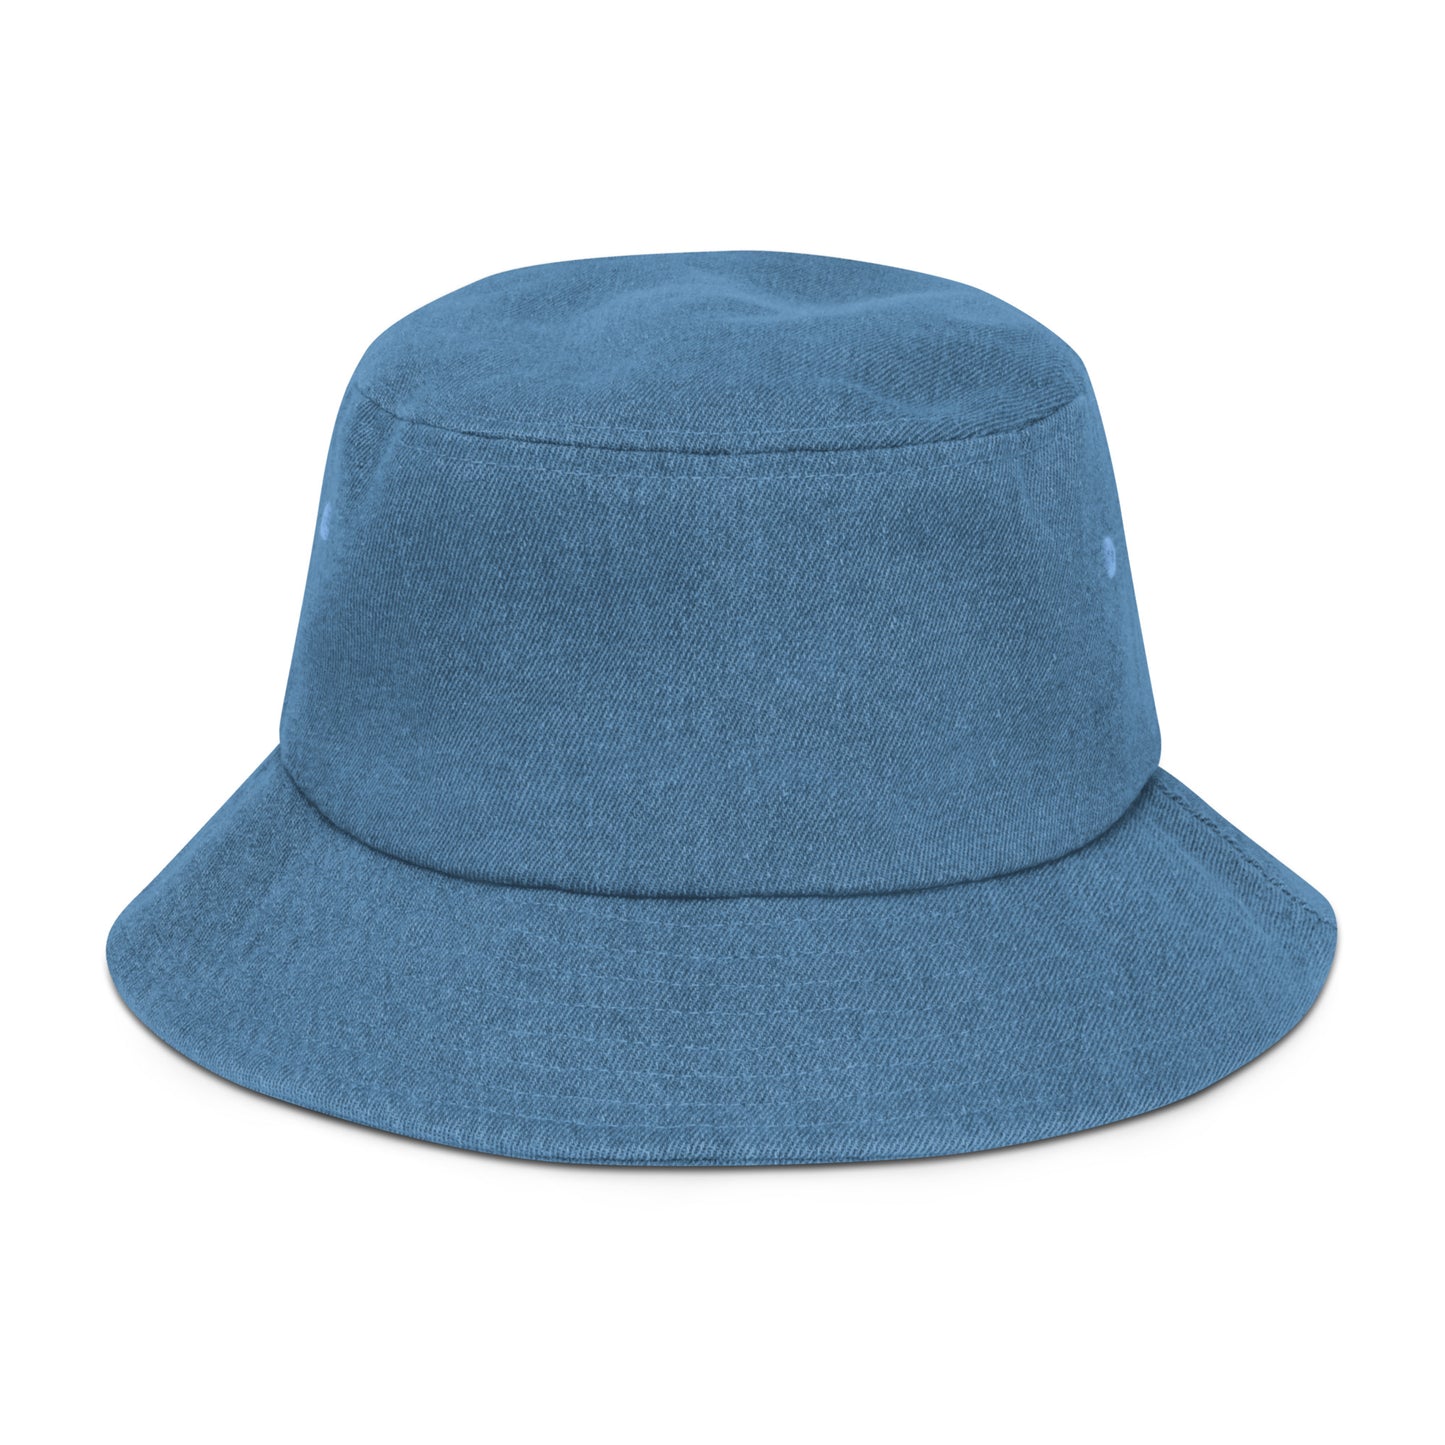 Rich Girl Denim bucket hat